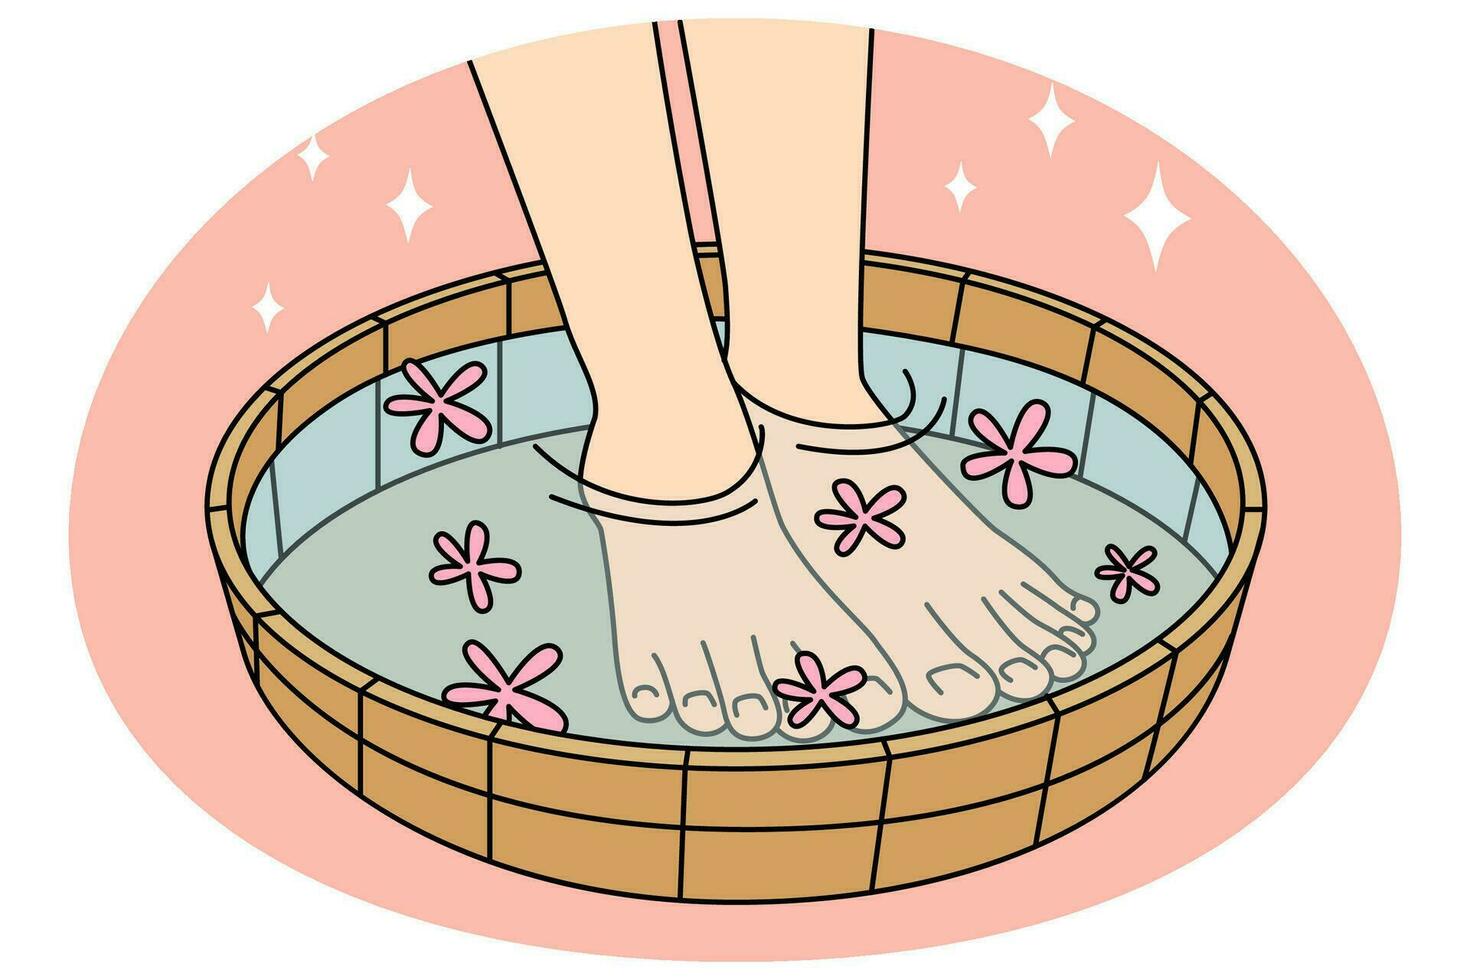 närbild av ben i skål med vatten och blommor. person njut av förfaranden i spa eller salong. aromaterapi och avslappning. vektor illustration.